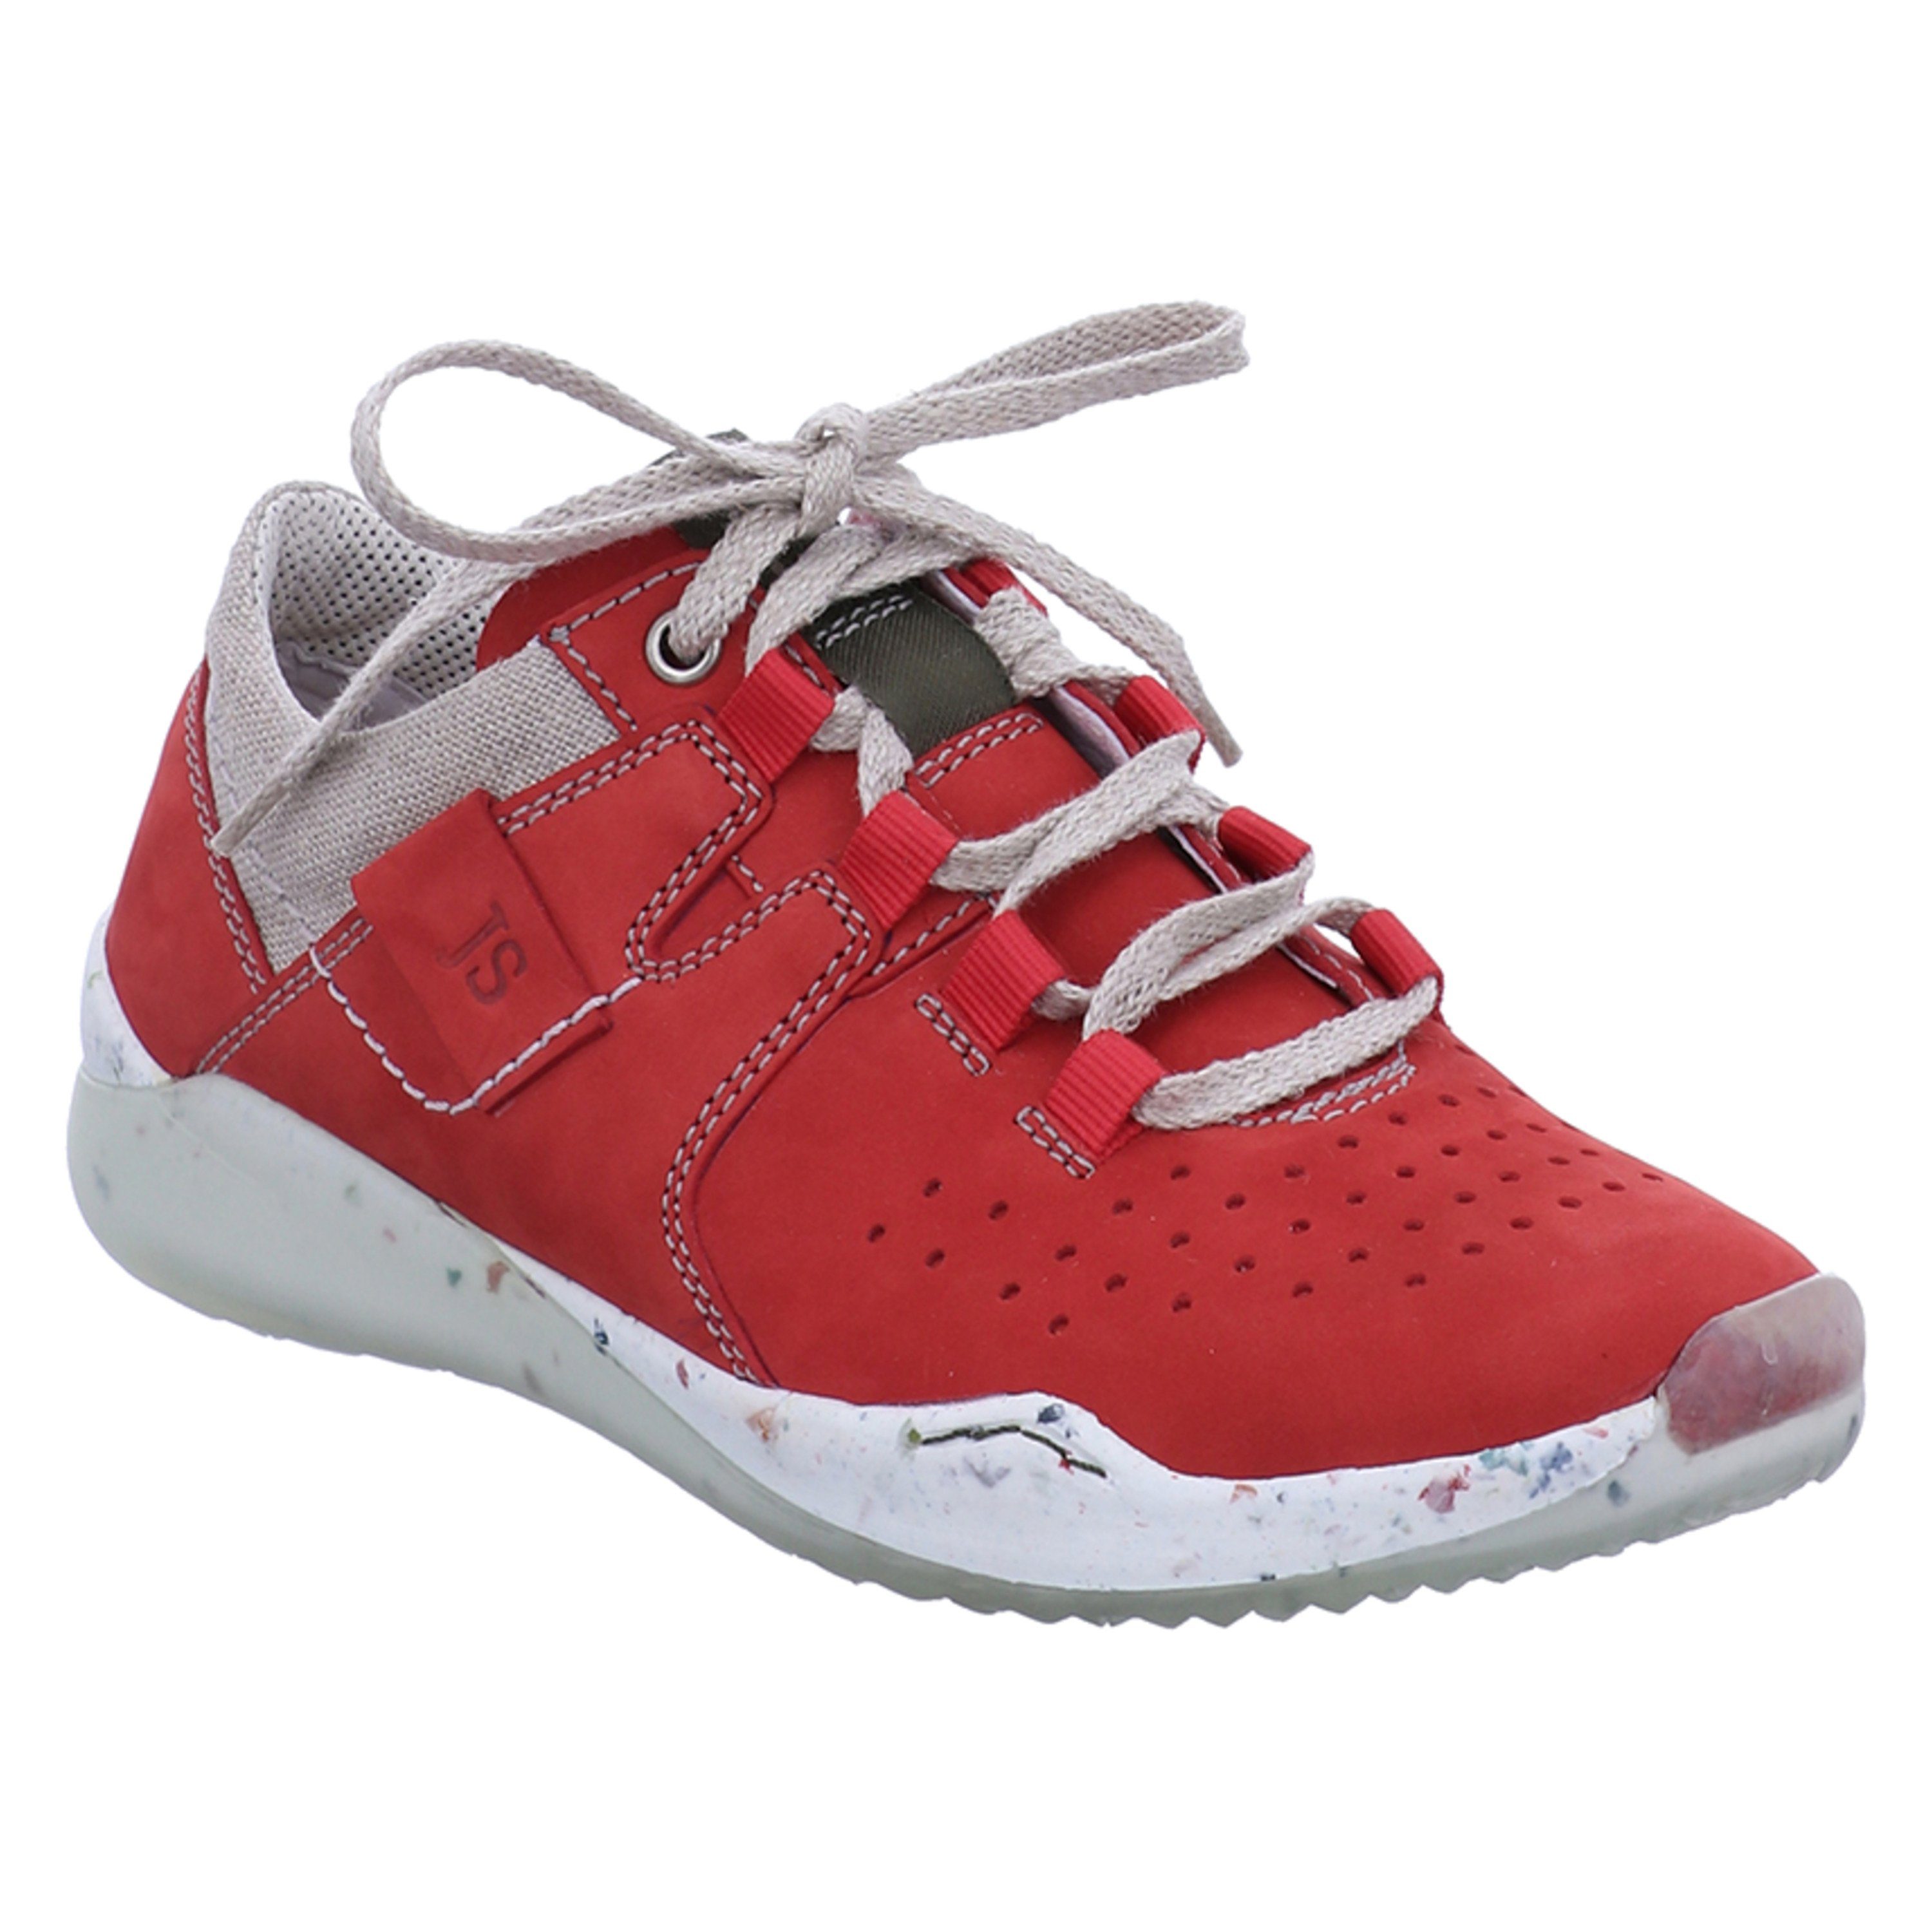 Josef Seibel »Ricky 18, rot« Sneaker online kaufen | OTTO